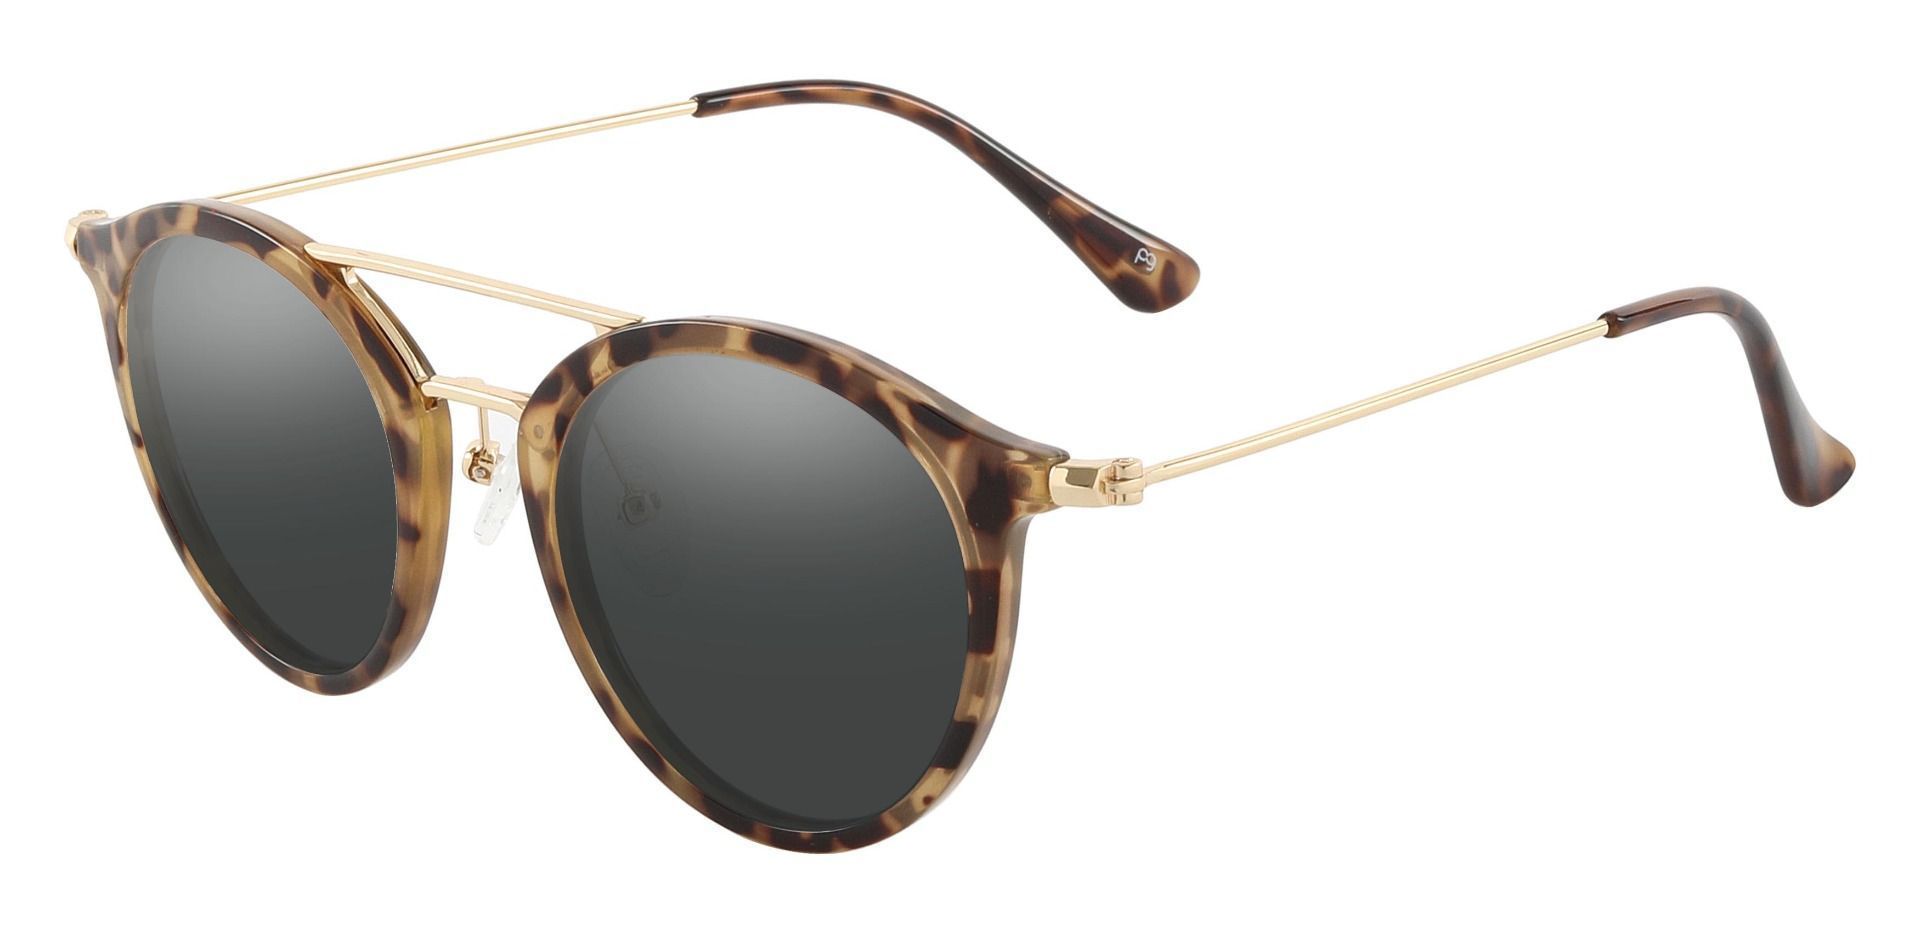 Malden Aviator Prescription Sunglasses - Tortoise Frame With Gray Lenses